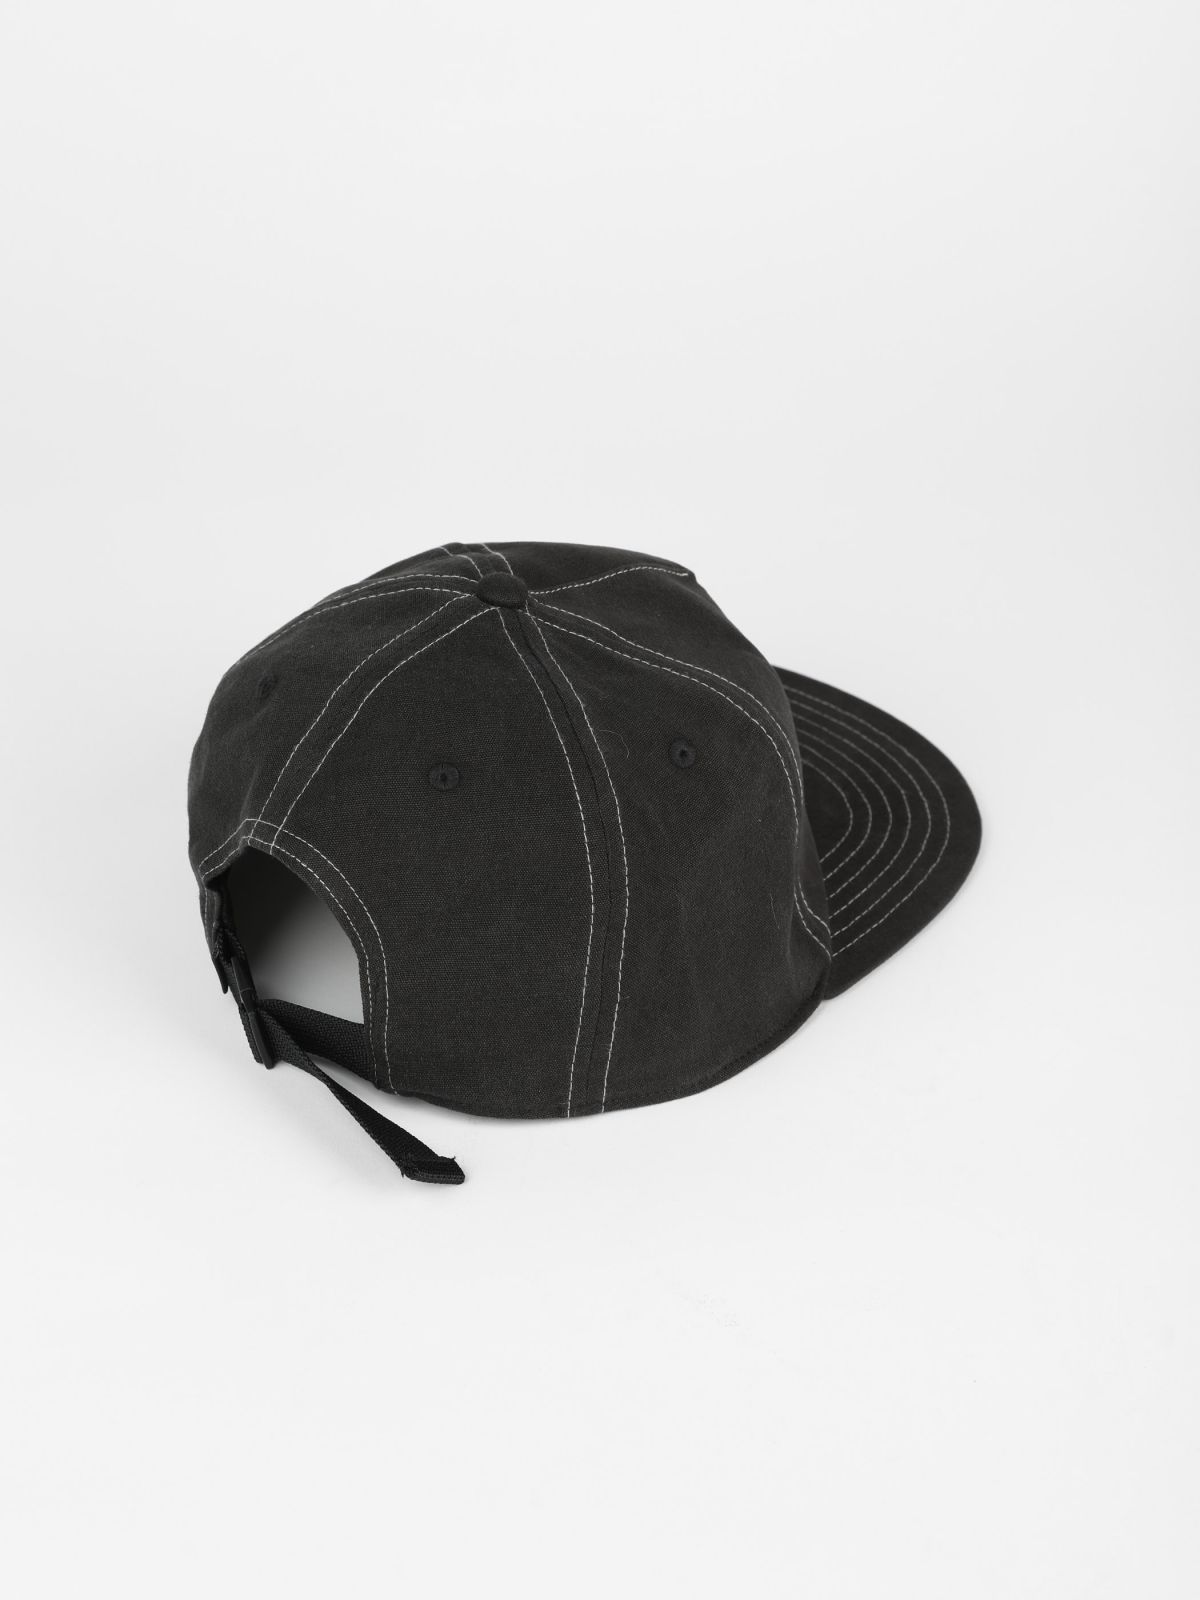  כובע מצחייה עם לוגו / גברים של QUIKSILVER